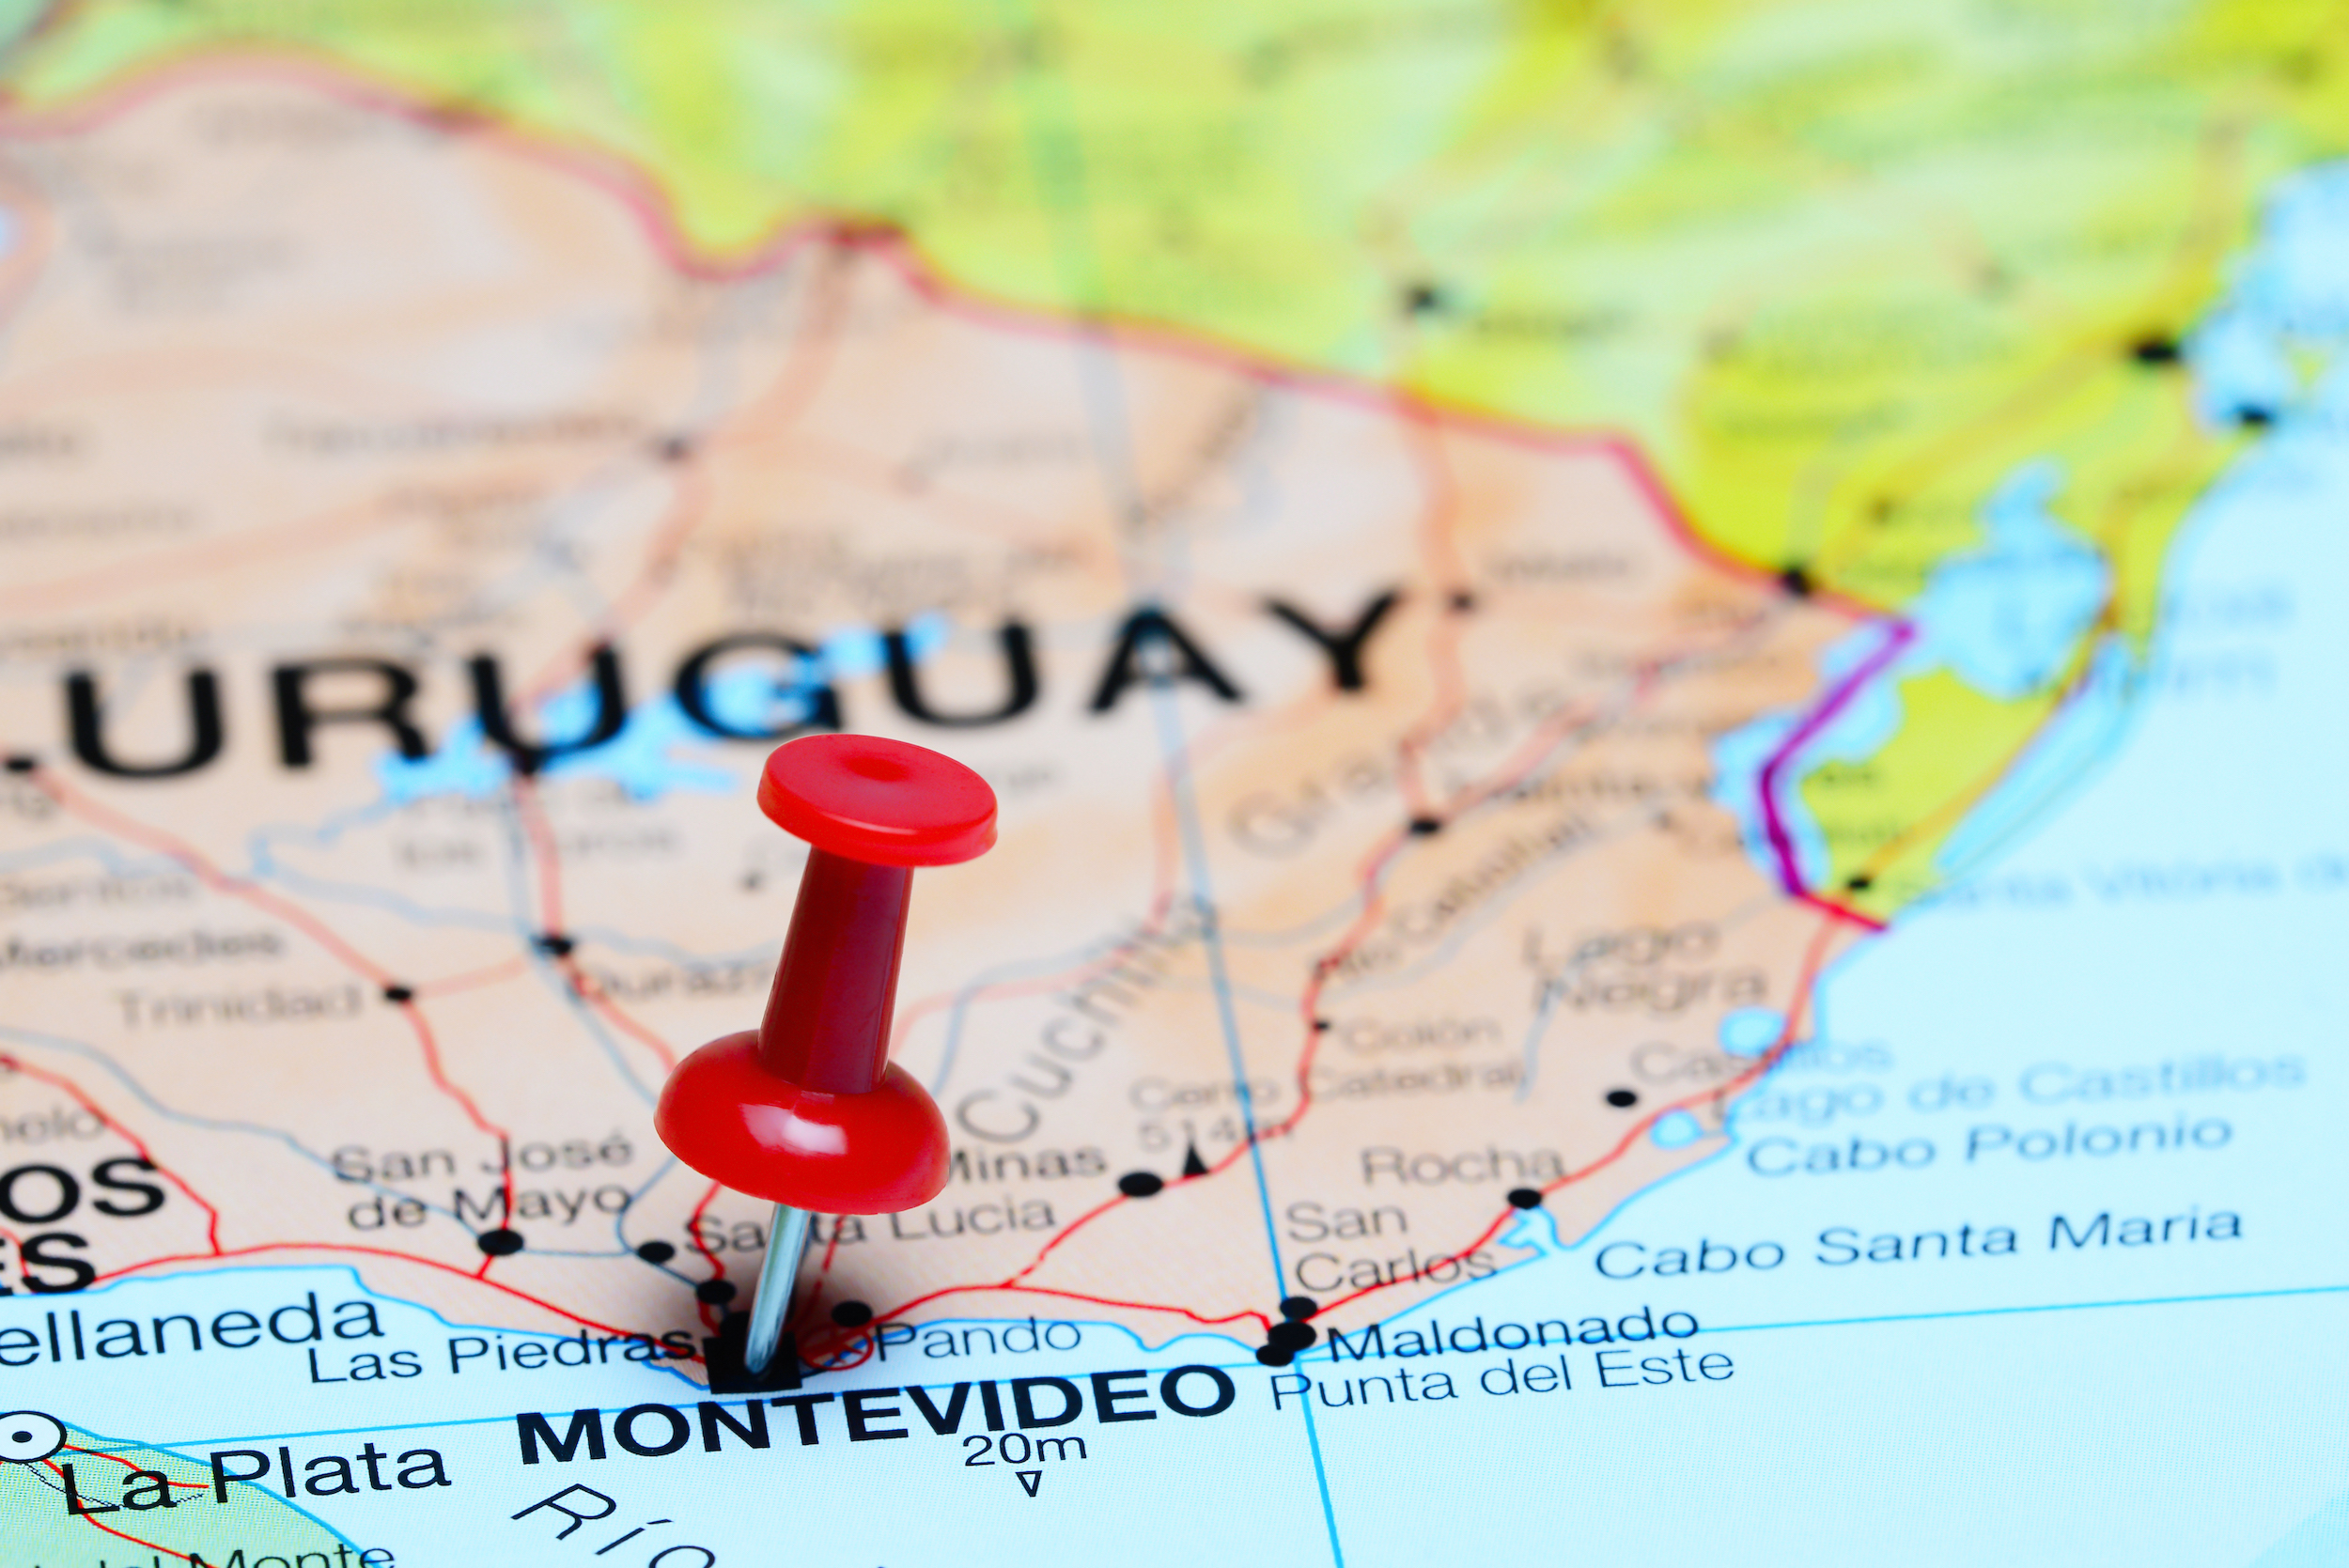 Uruguay : un aigle en bronze créé la polémique